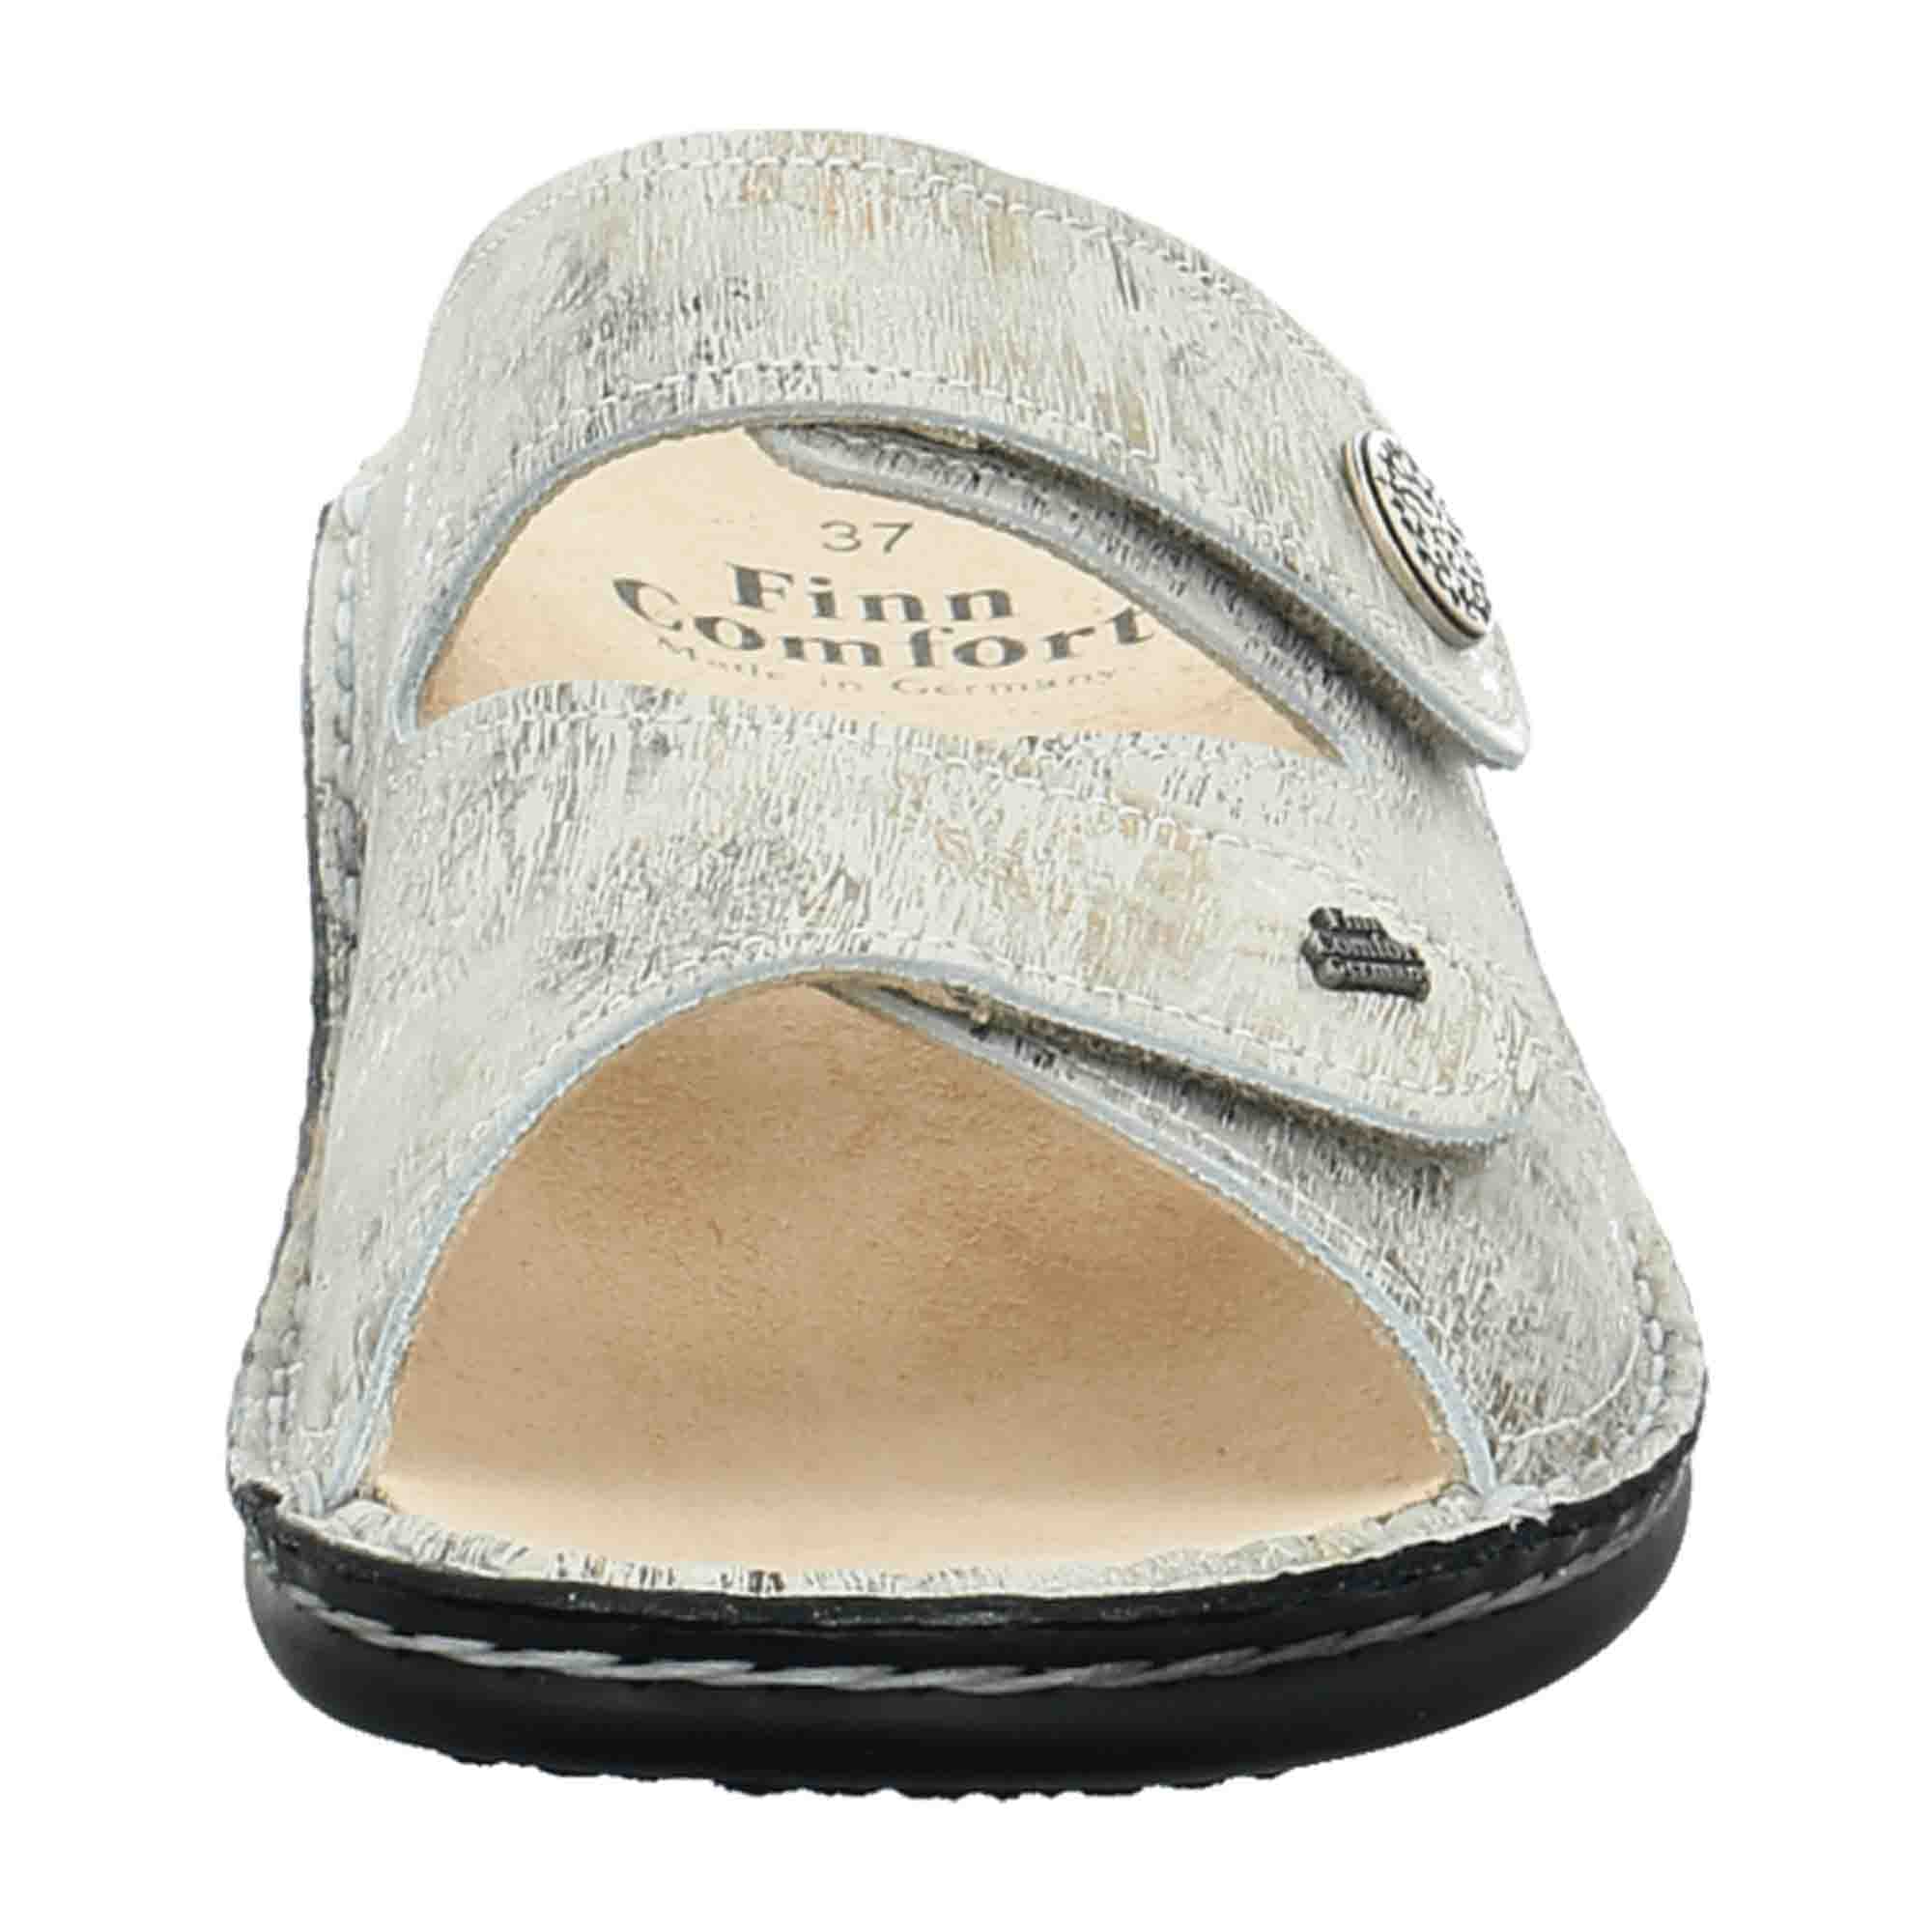 Finn Comfort Torbole Women's Comfort Sandals - Elegant White